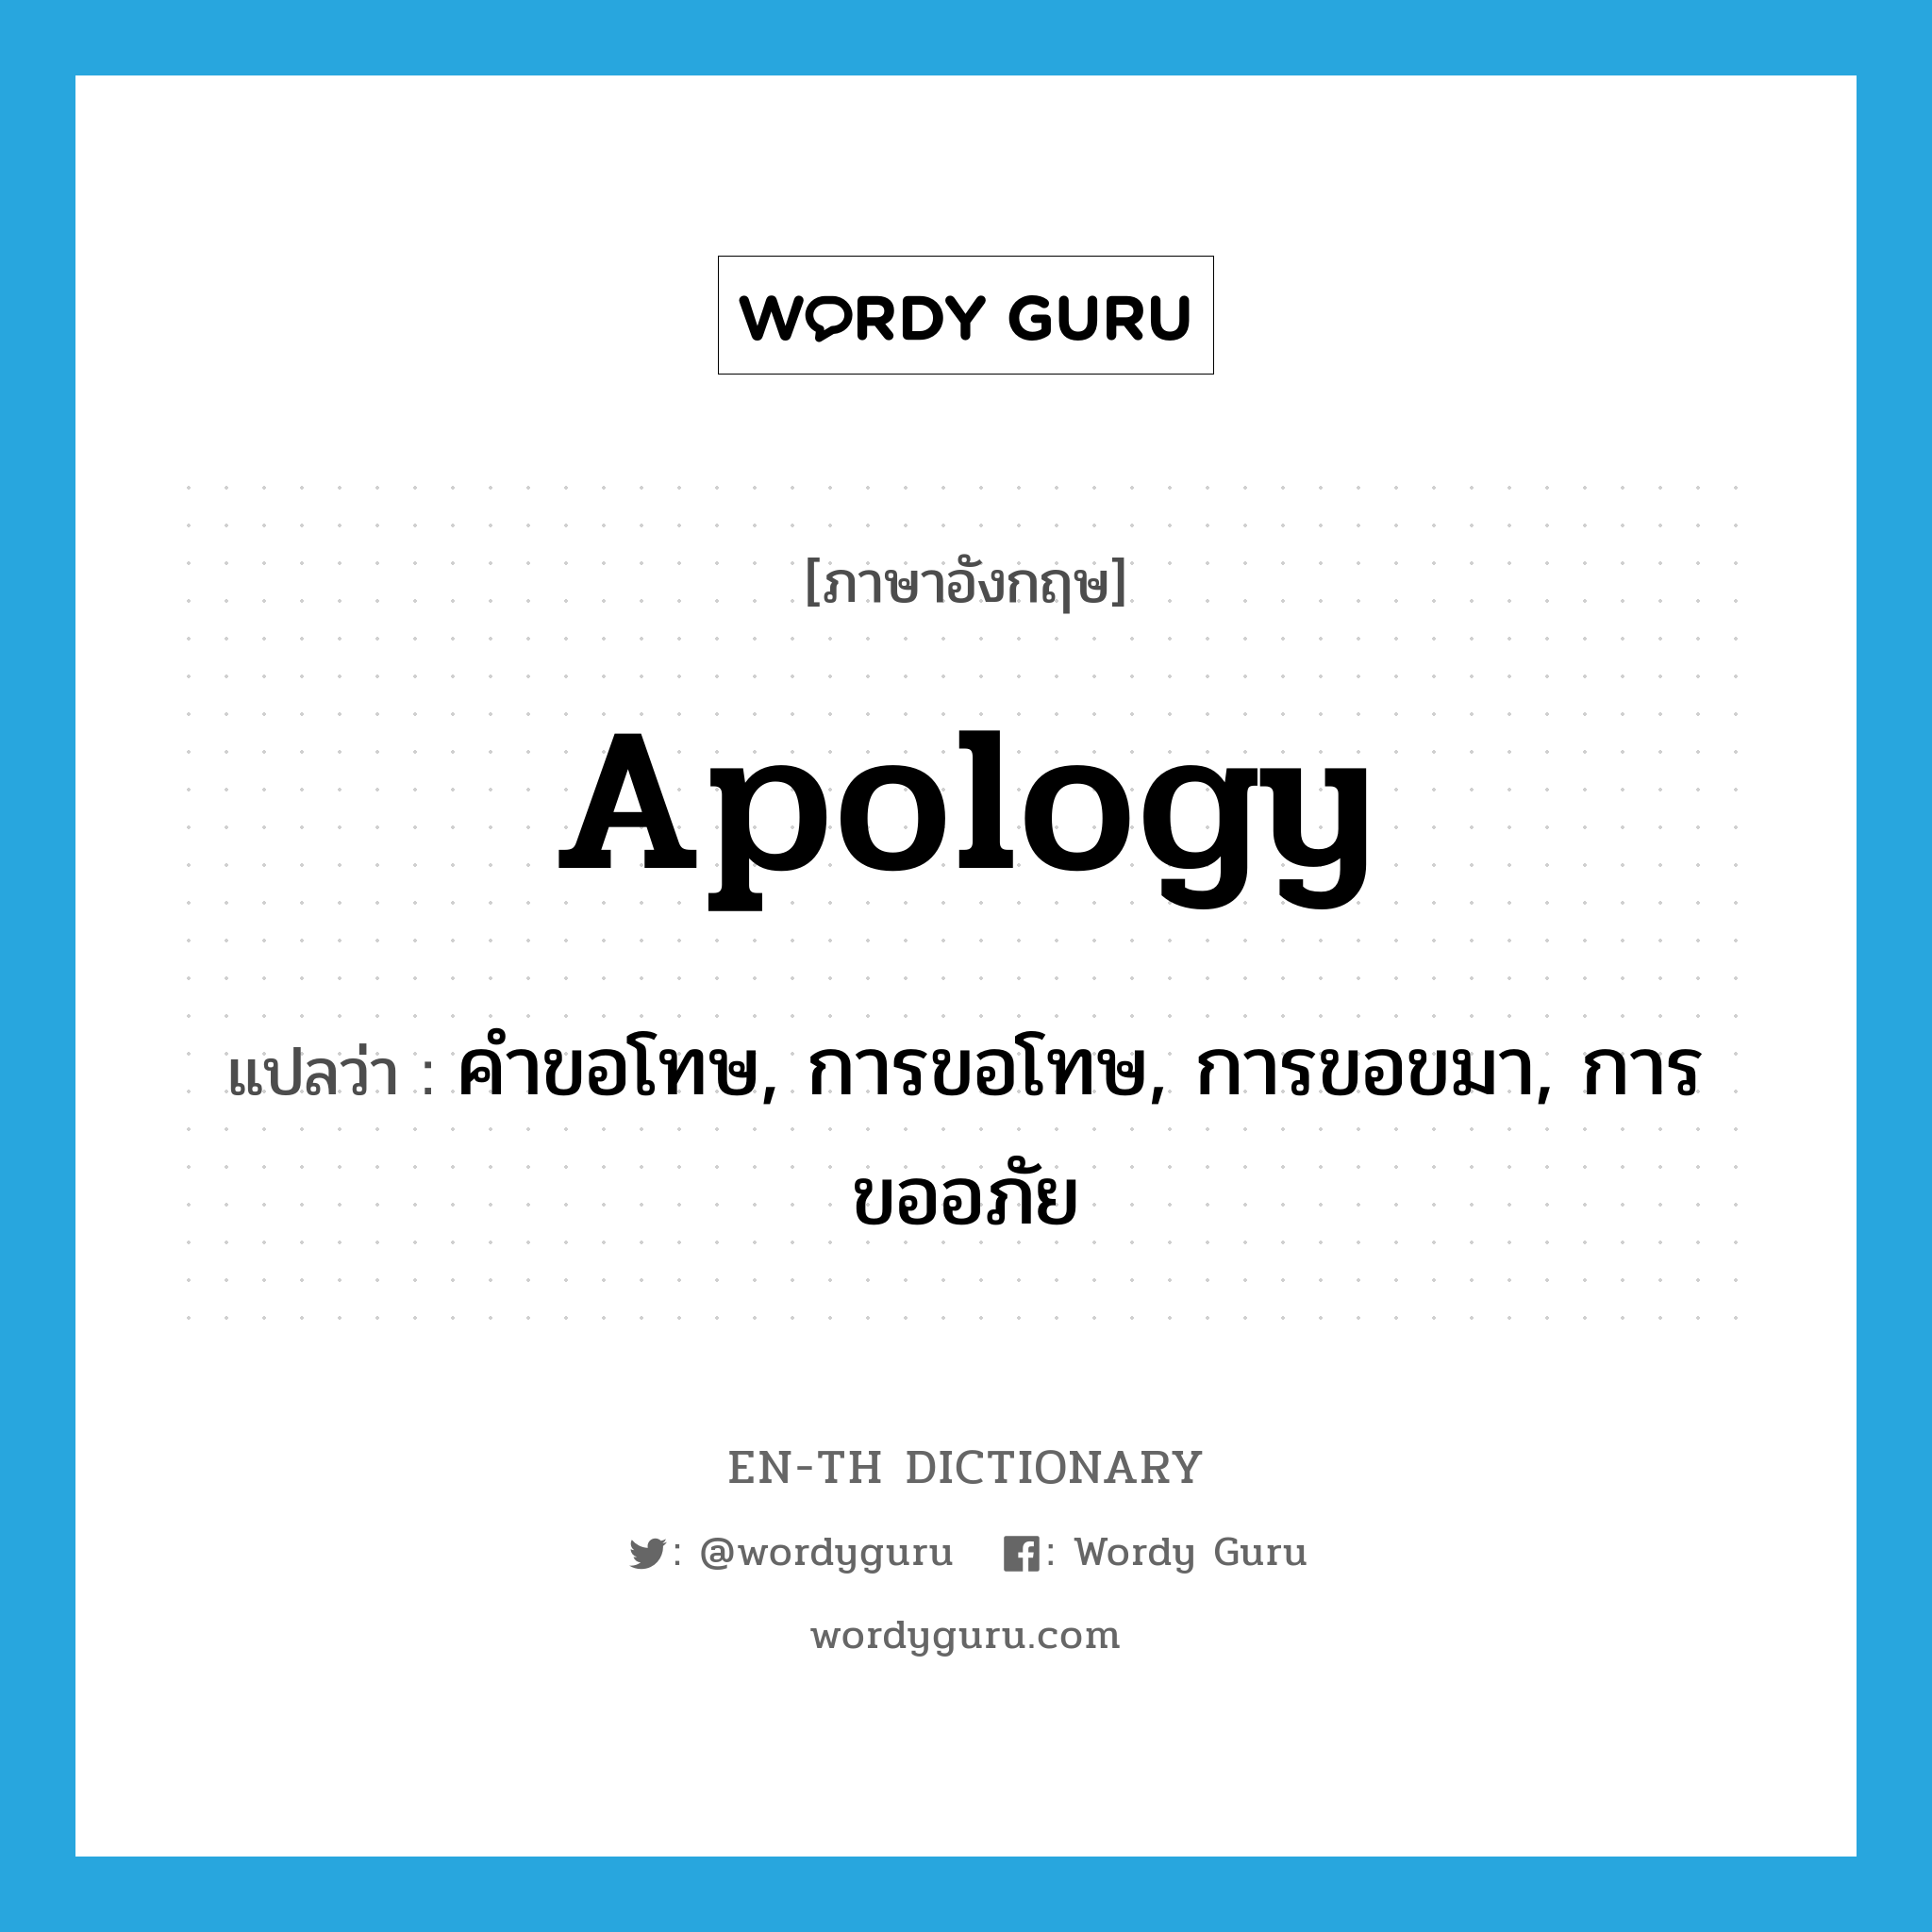 apology แปลว่า?, คำศัพท์ภาษาอังกฤษ apology แปลว่า คำขอโทษ, การขอโทษ, การขอขมา, การขออภัย ประเภท N หมวด N